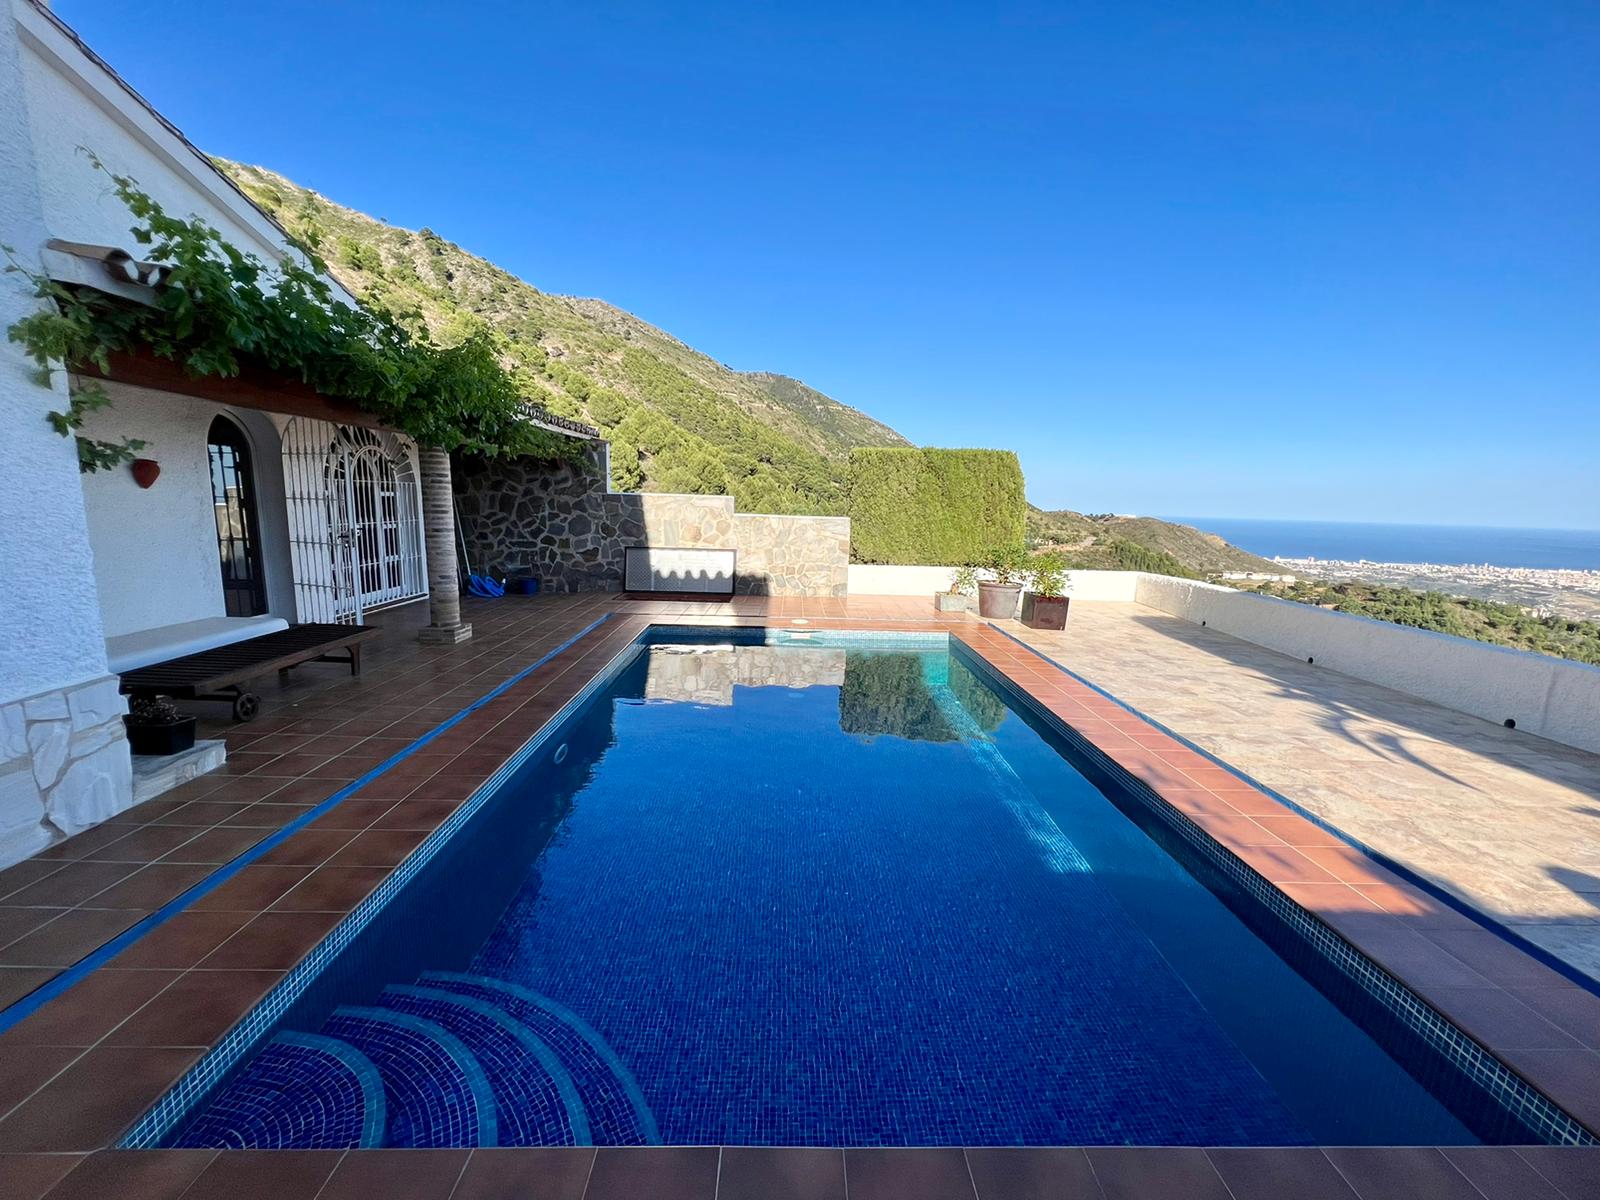 4 bedroom Villa with spectacular views near Valtocado